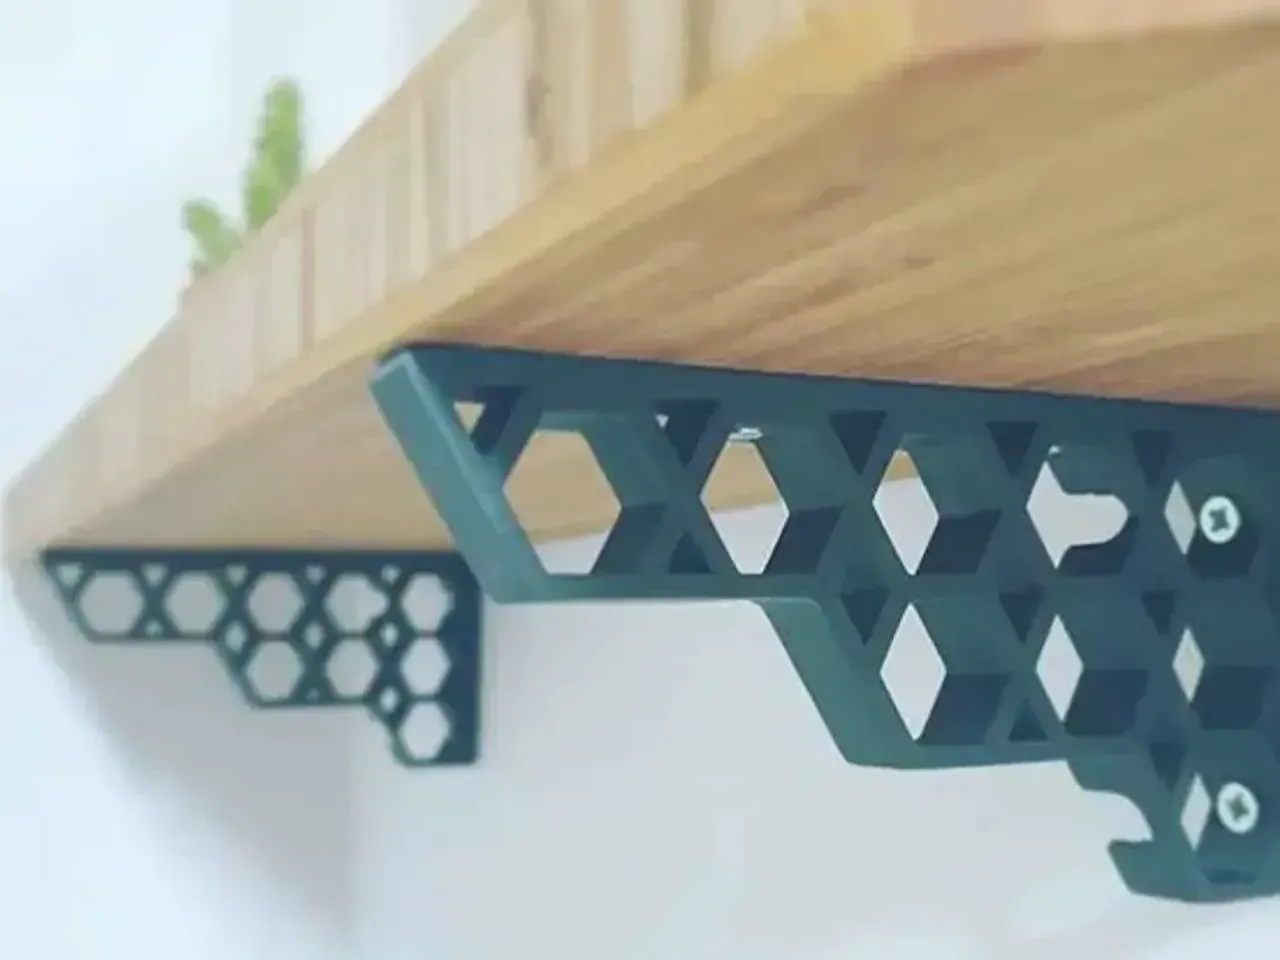 Shelf support bracket Honeycomb
3D
